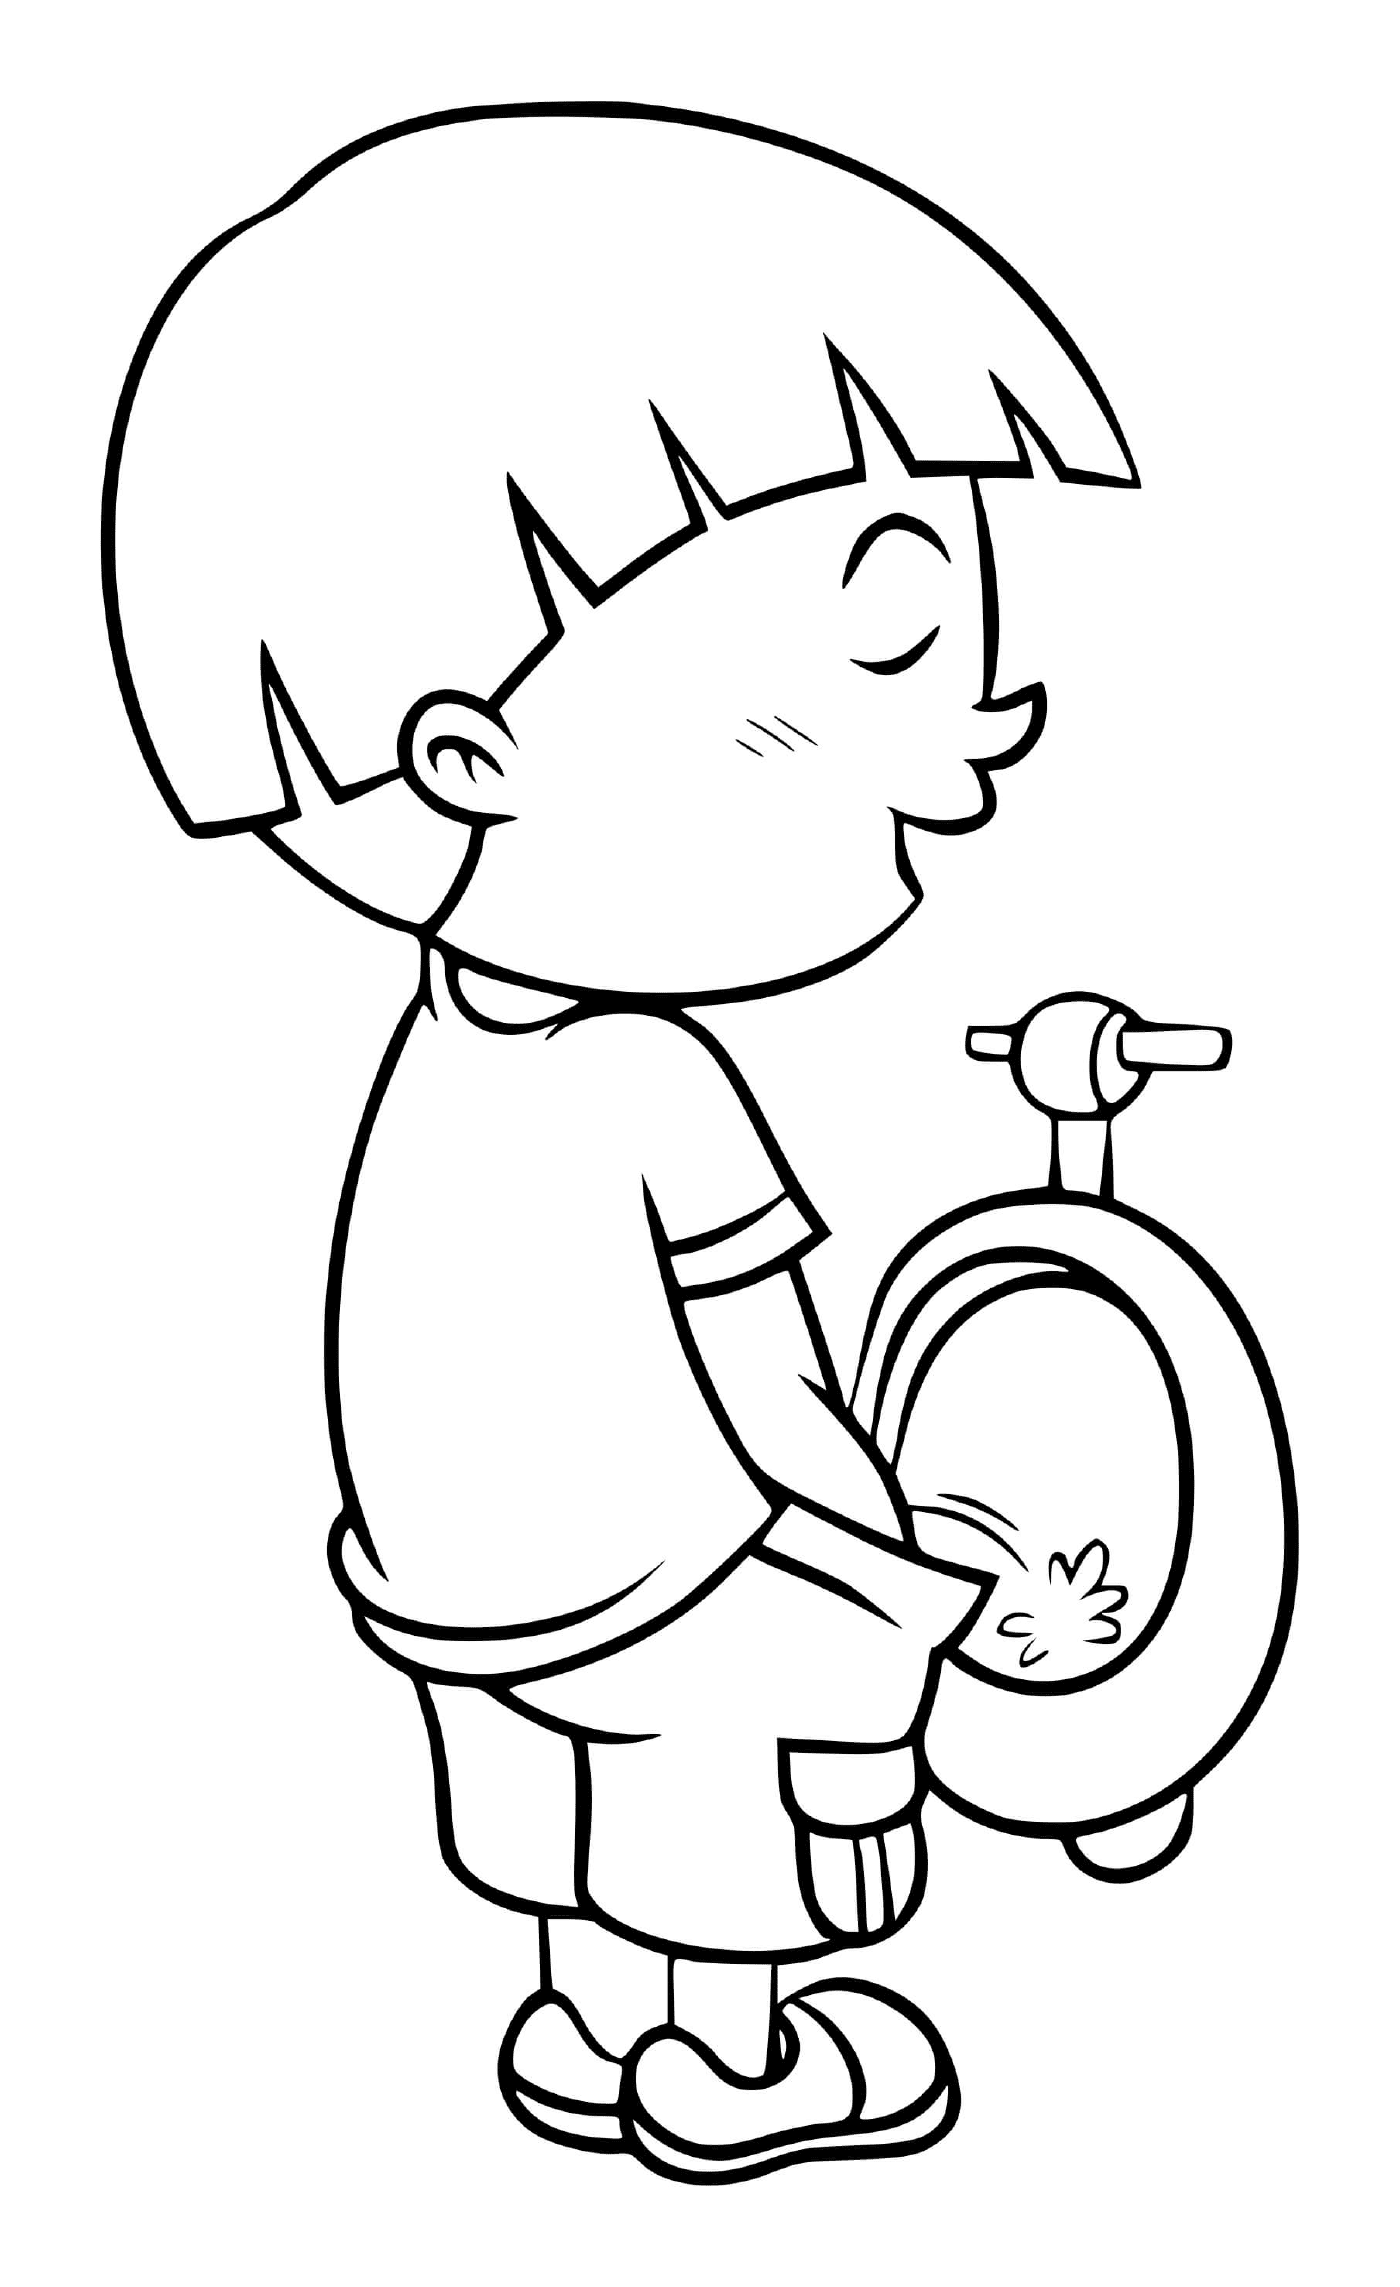  طفل صغير يذهب إلى الحمام في الحمام 